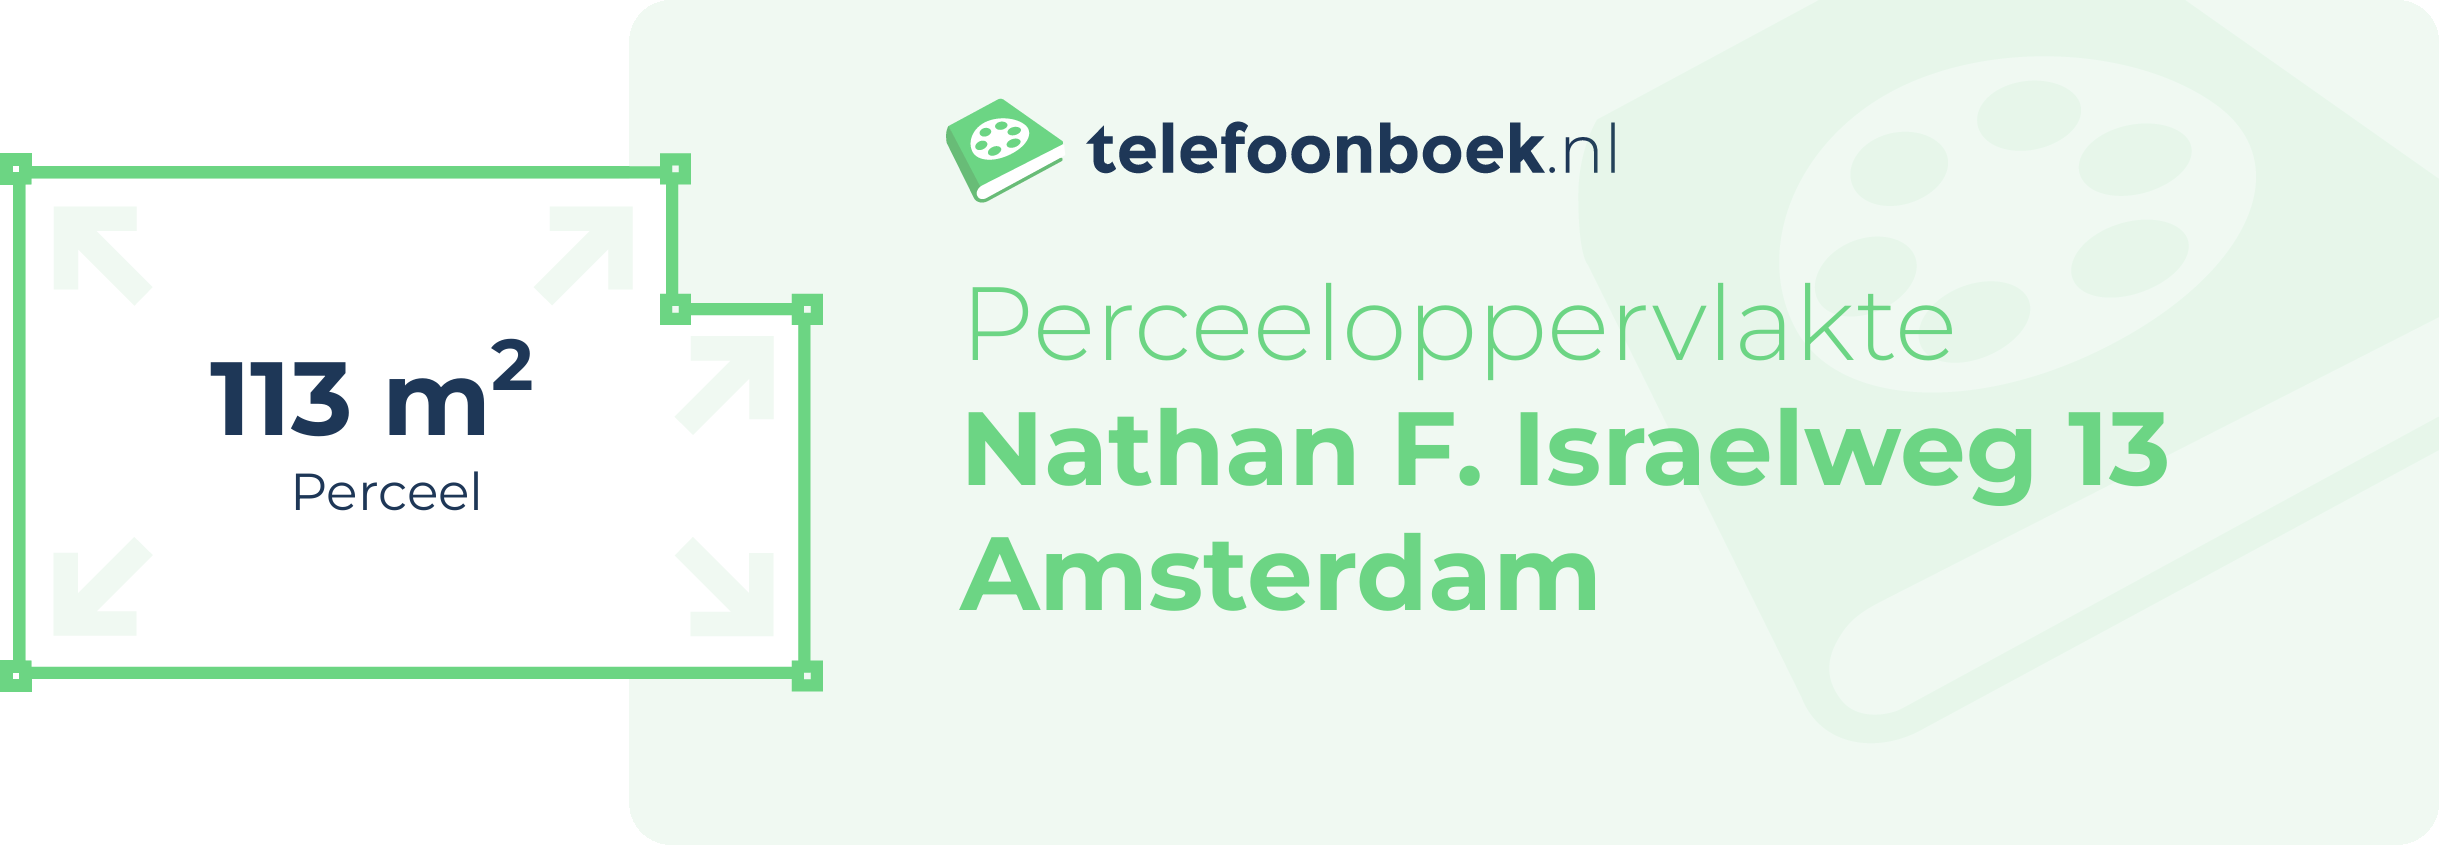 Perceeloppervlakte Nathan F. Israelweg 13 Amsterdam